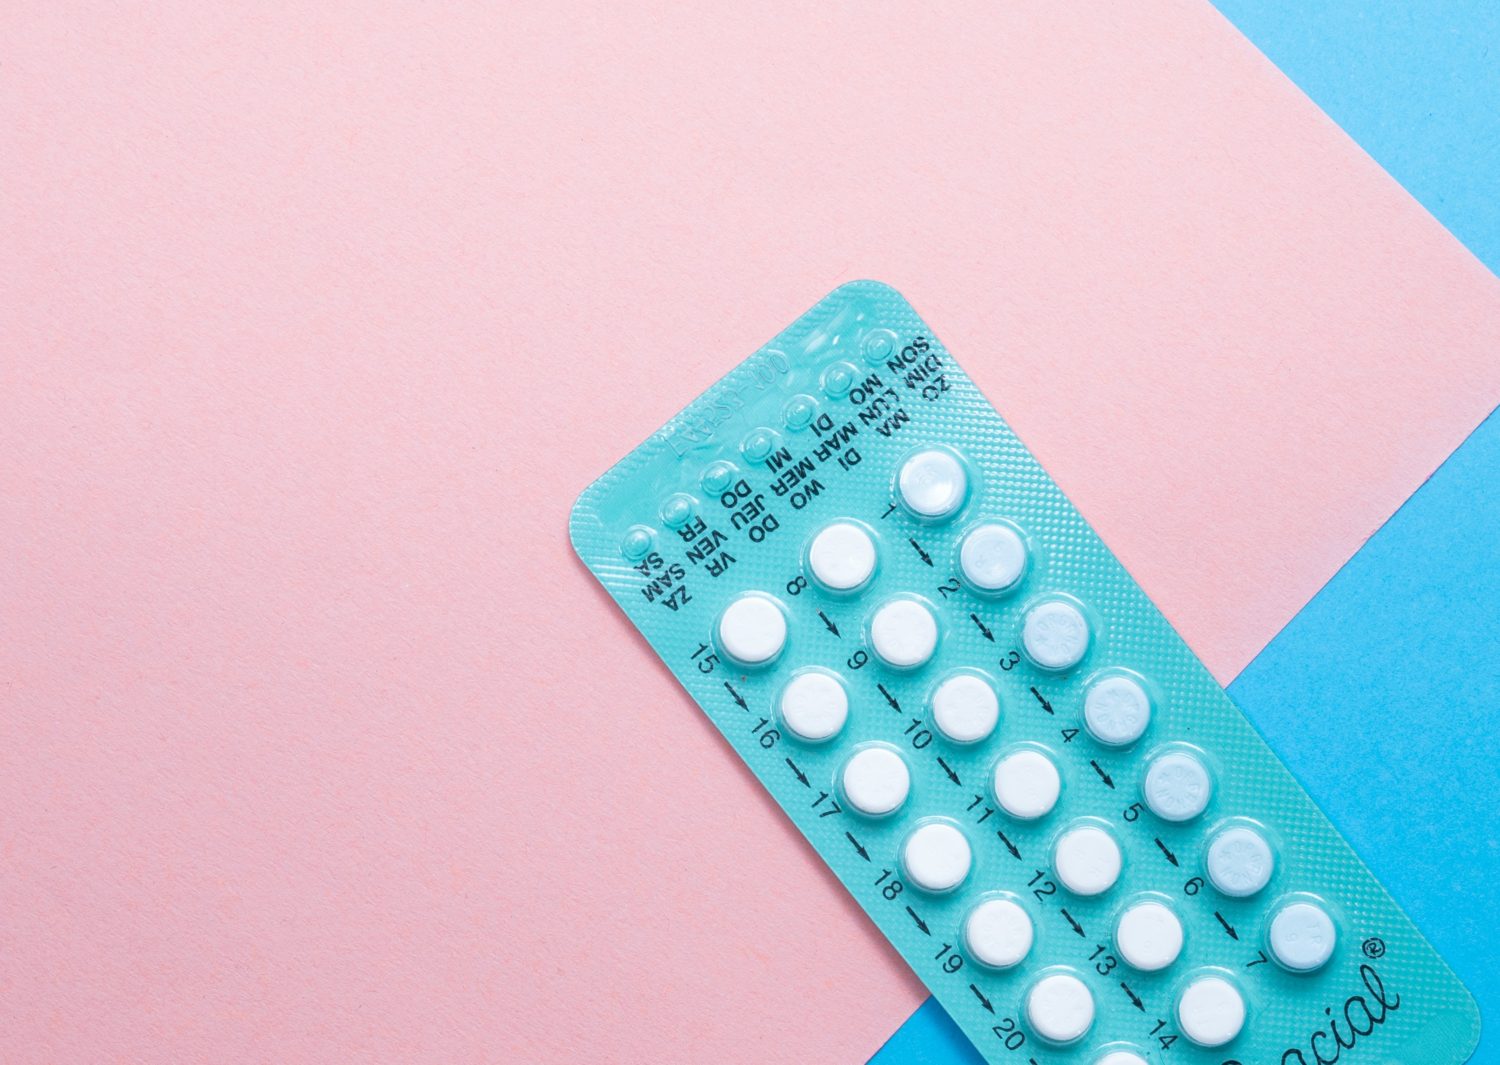 Contraception: Combined Oral Contraceptive Pill